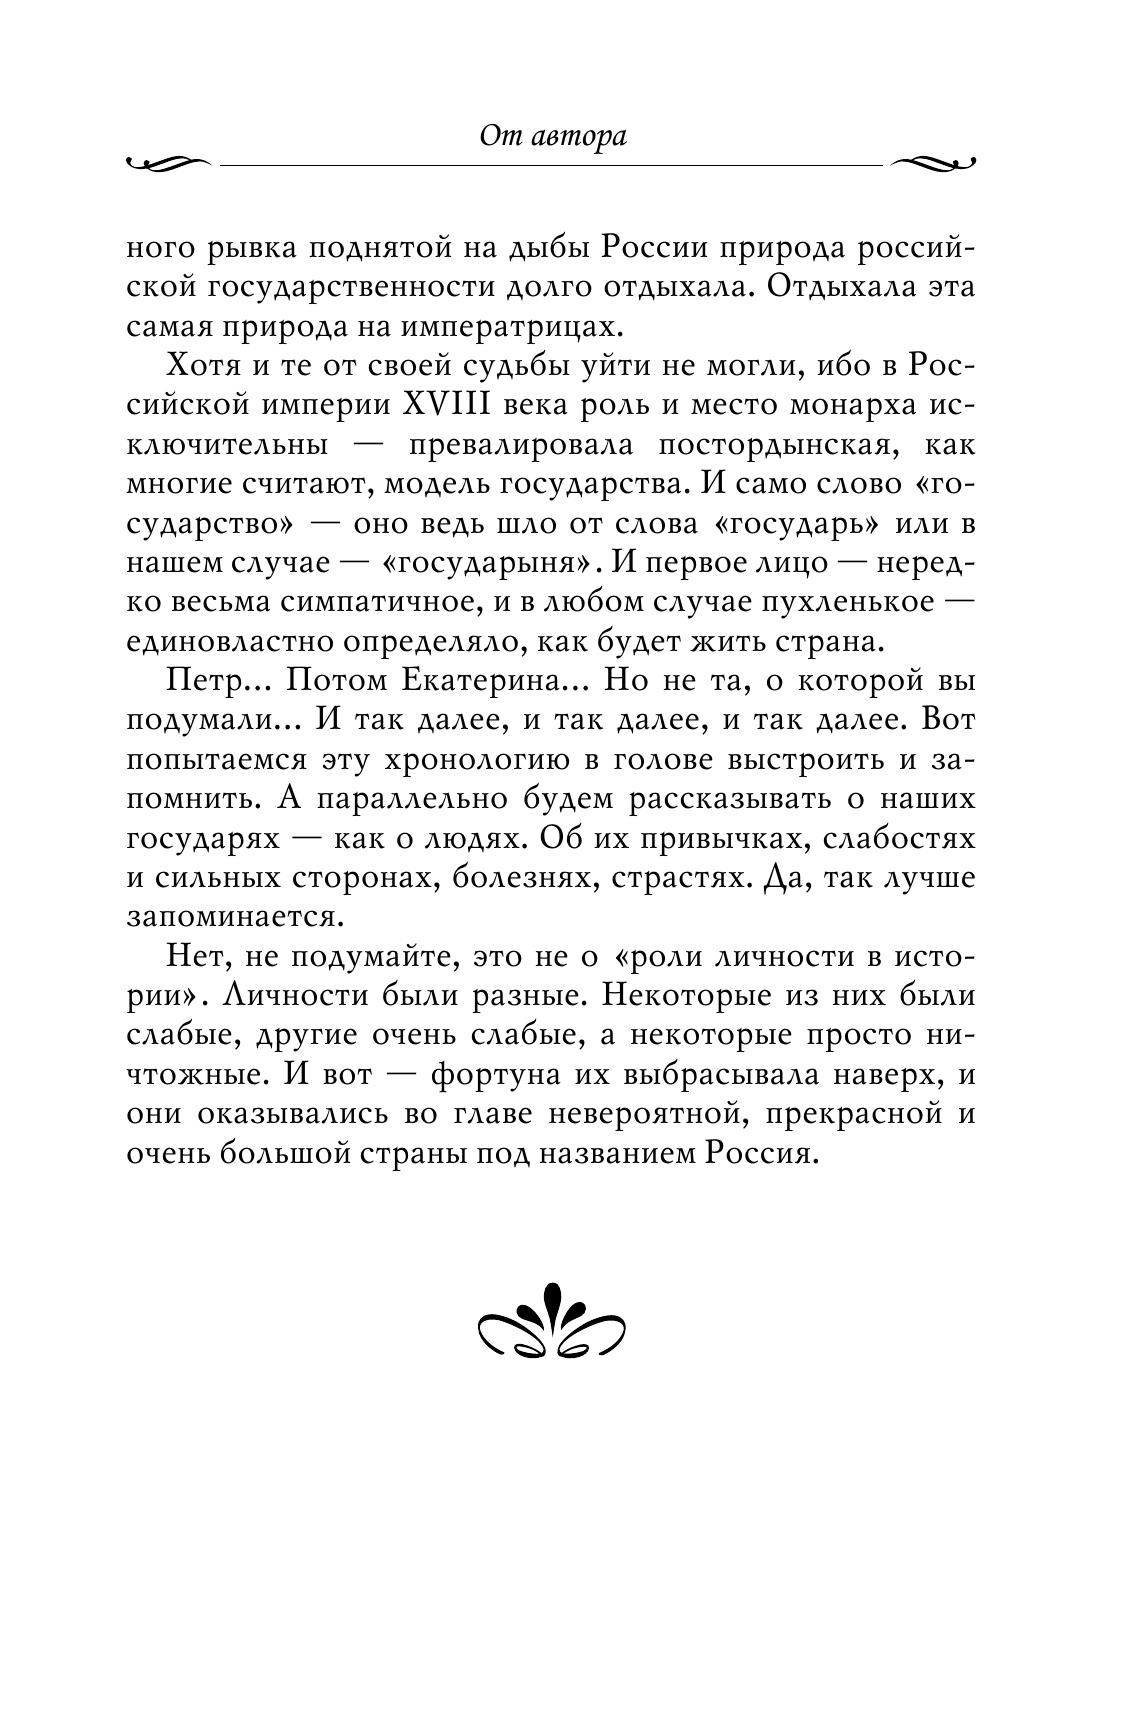 Рассказы из русской истории. XVIII век 11